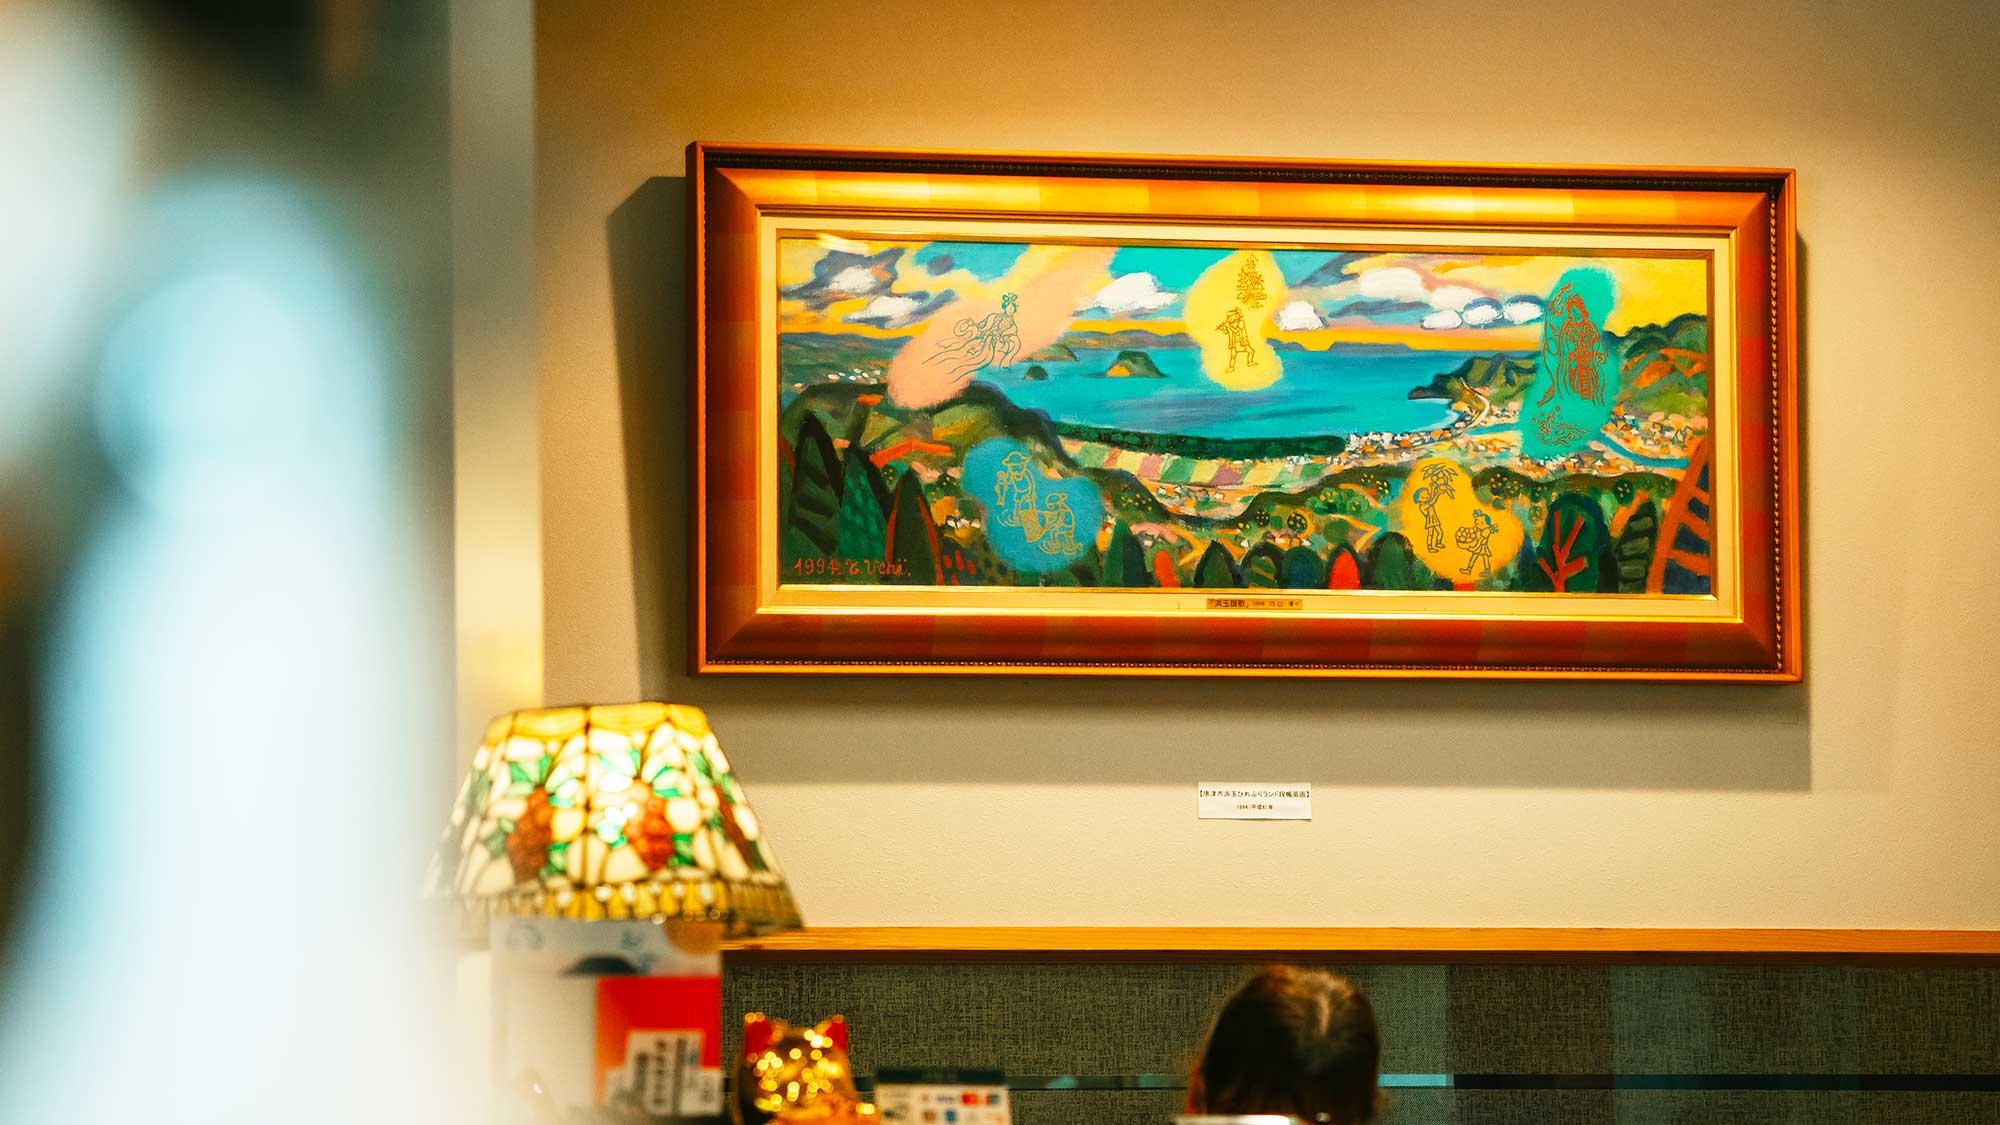 【館内】佐賀・唐津をモチーフにした美術品の数々。趣あるアート作品をお楽しみいただけます。